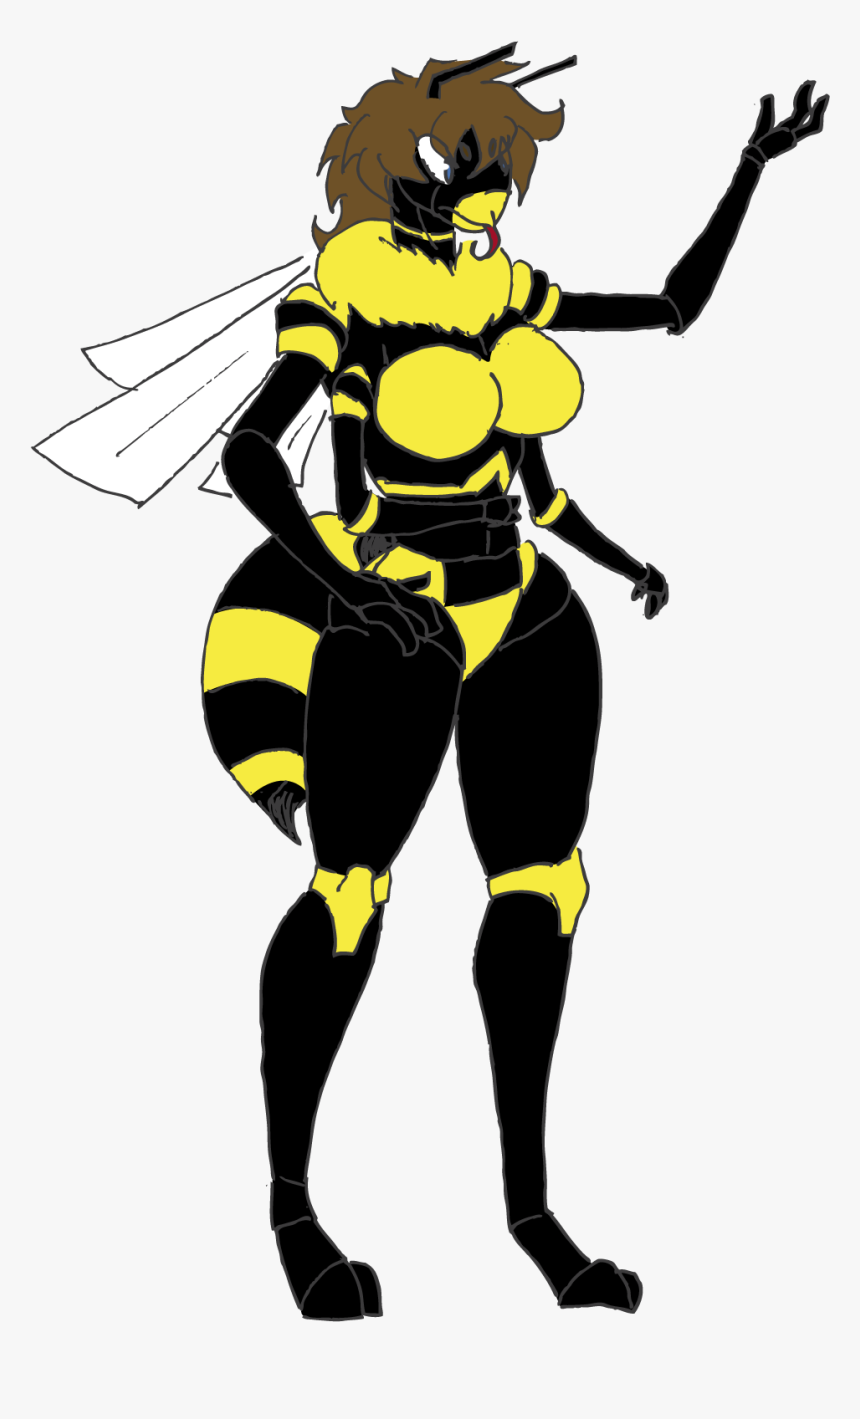 Vespa The Wasp - Wasp Cartoon, HD Png Download, Free Download